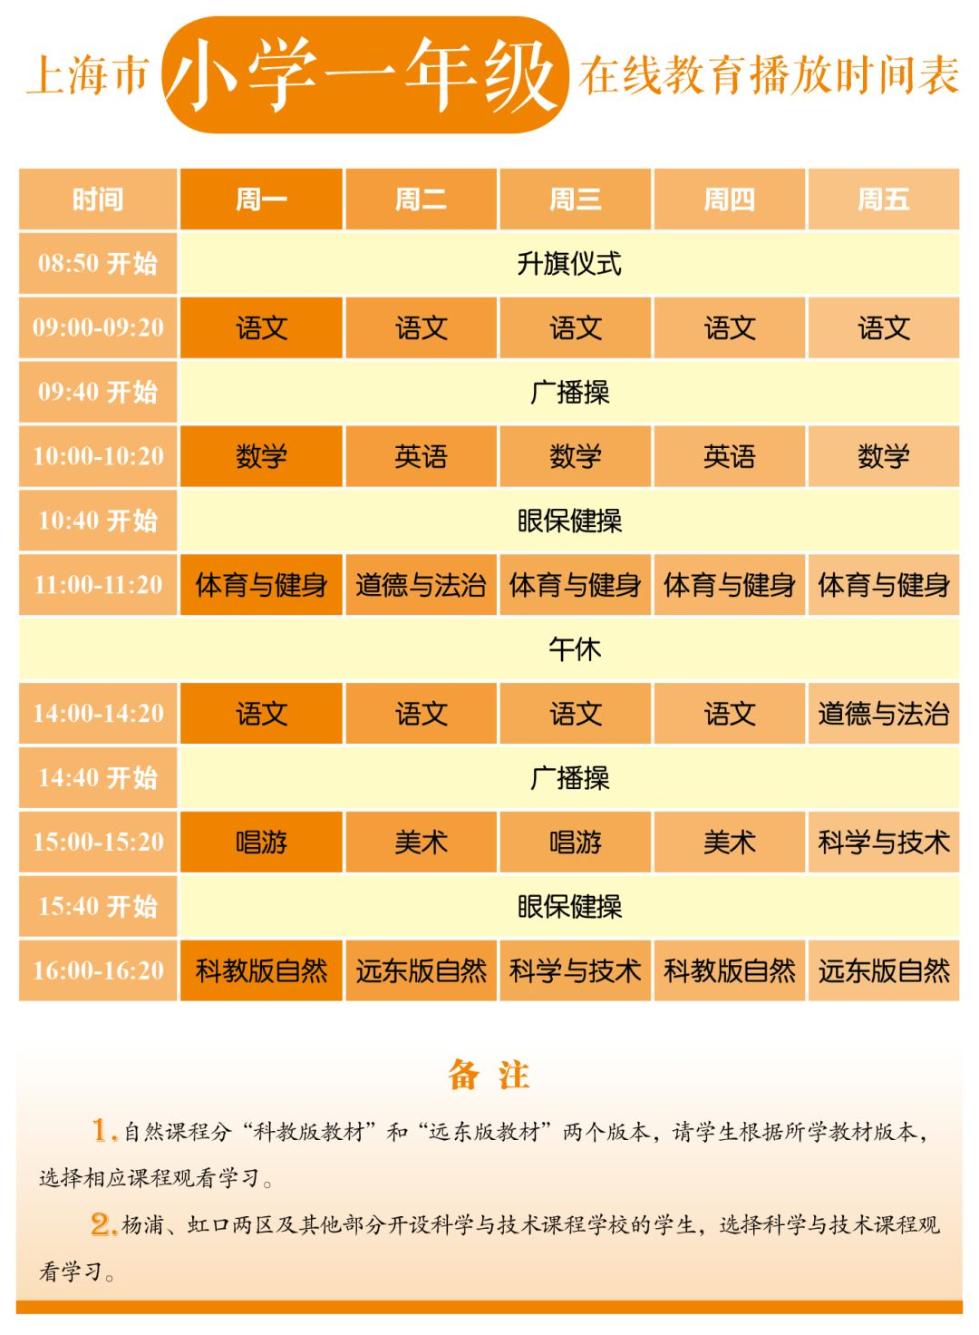 上海市中小学排名_公示|2020年度上海市中小学中青年教师教学评选活动(2)